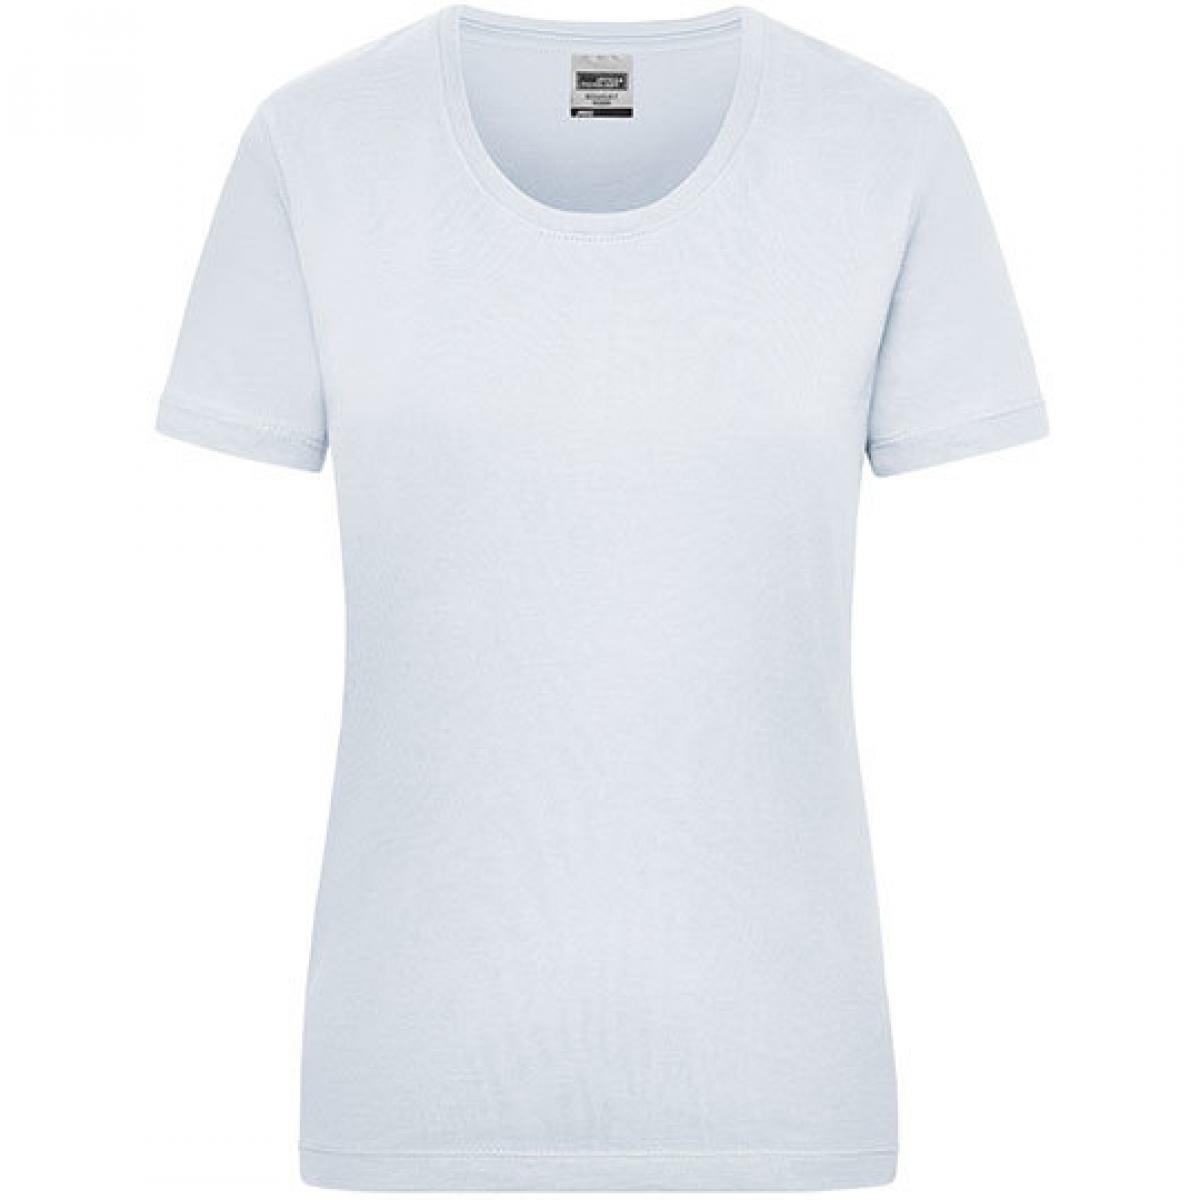 Hersteller: James+Nicholson Herstellernummer: JN 802 Artikelbezeichnung: Workwear-T Women Damen T-Shirt Farbe: White